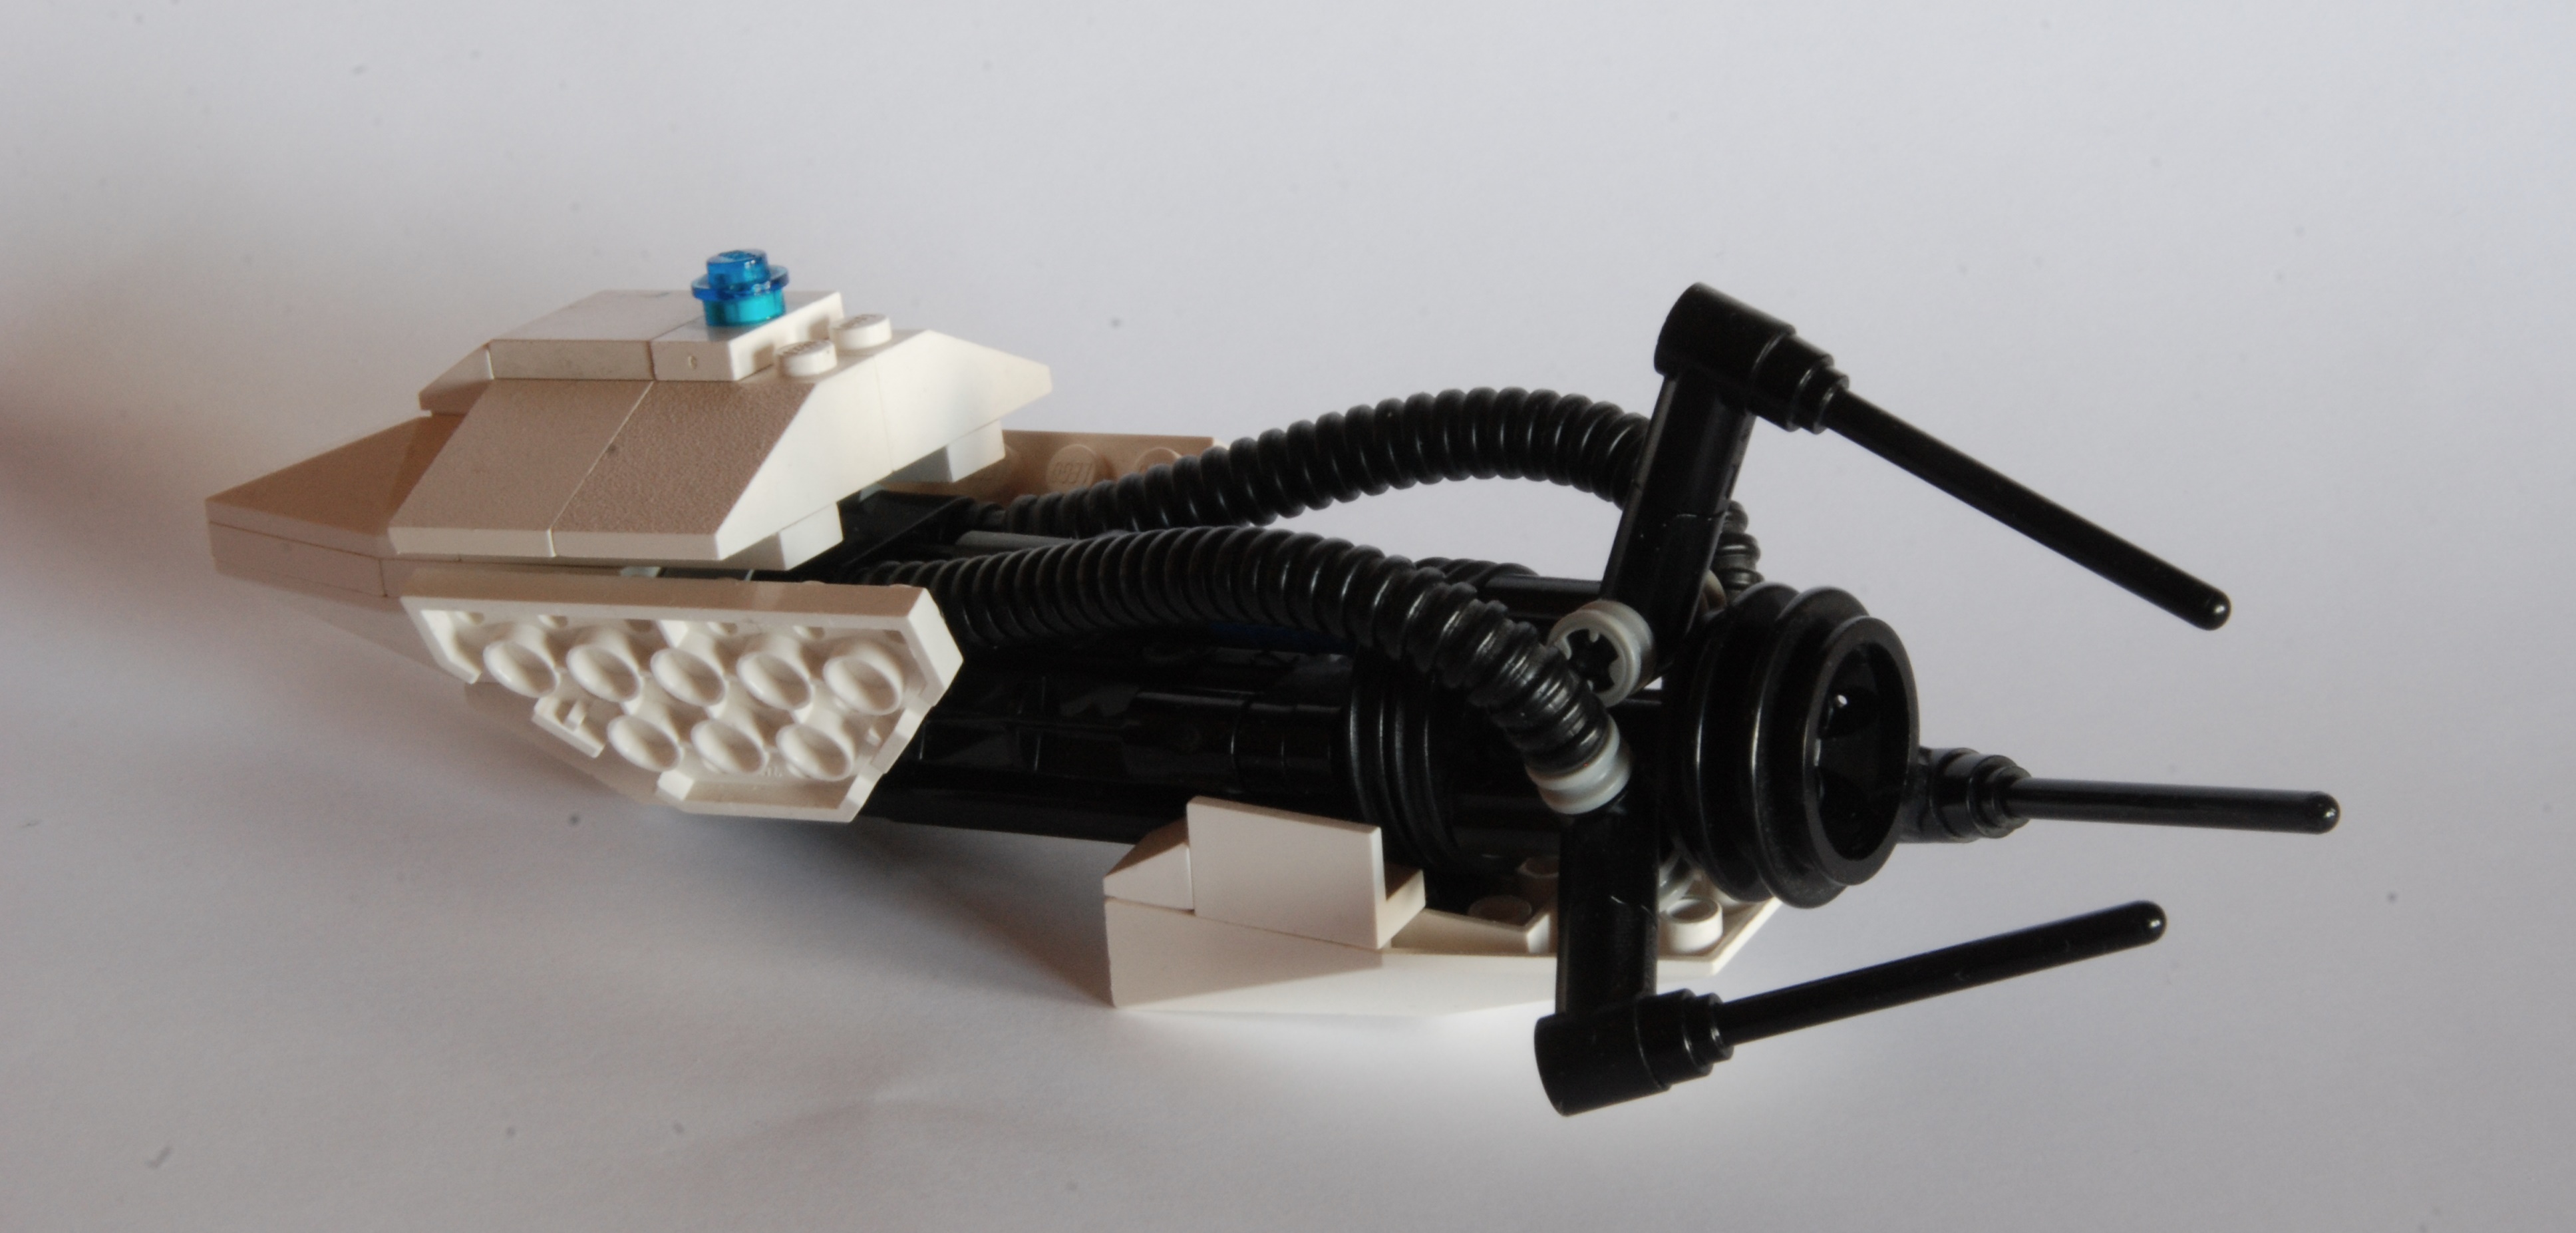 How to build a Lego Portal Gun | Marian's Blog